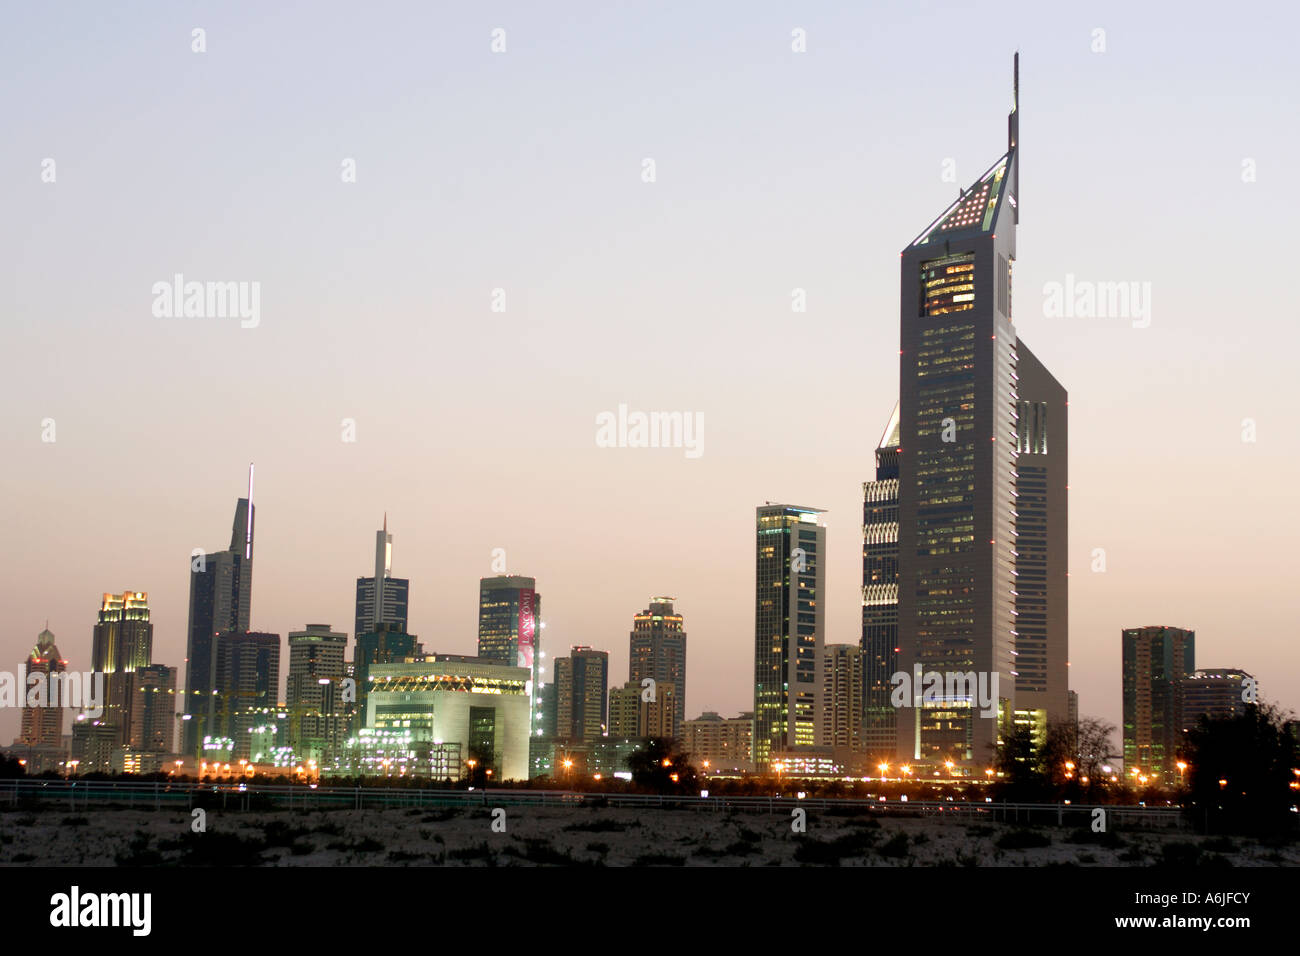 Dubai in the evening, United Arab Emirates Stock Photo